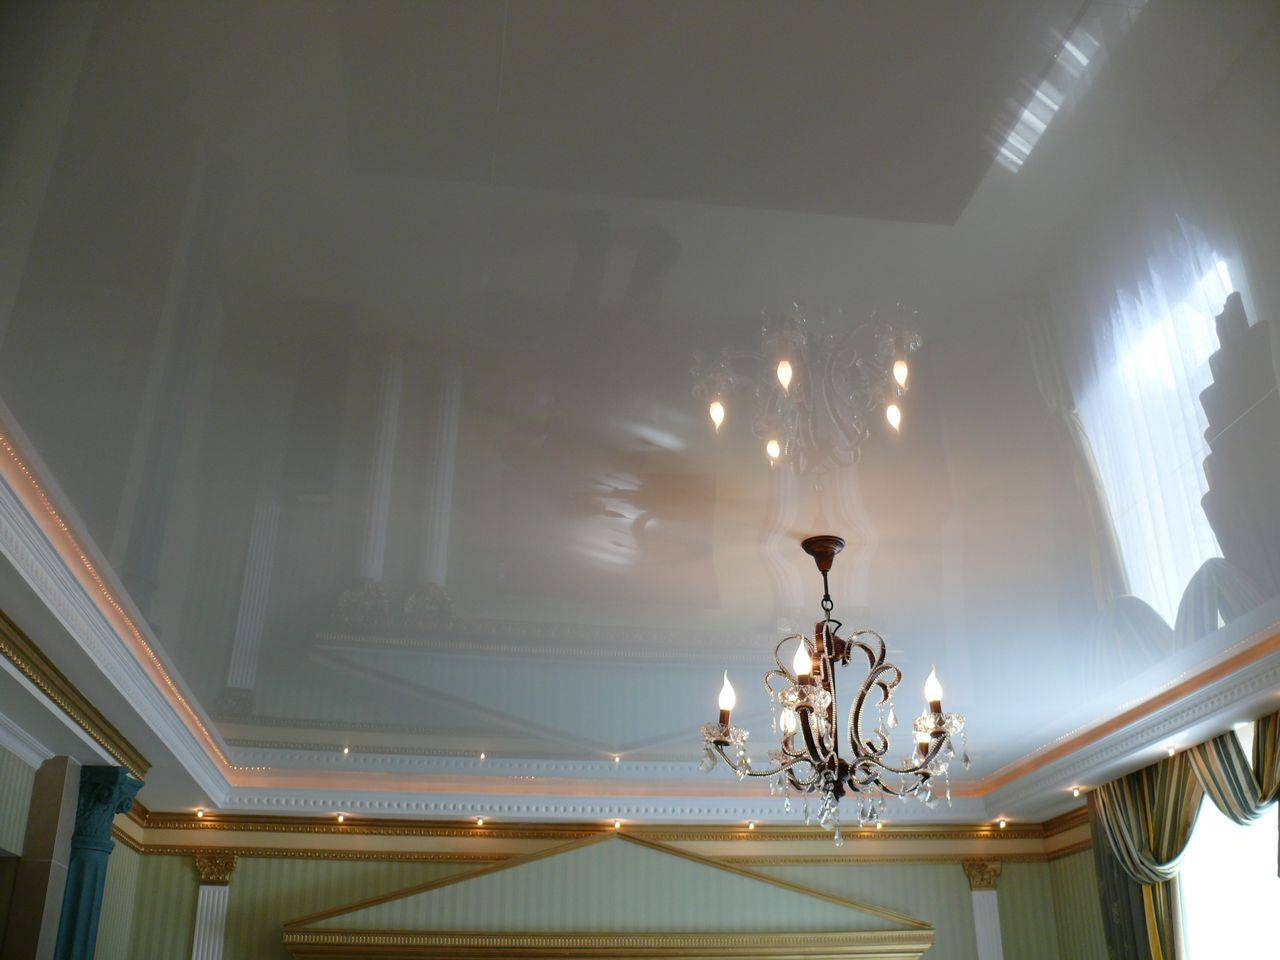 Отличие матового потолка от сатинового - что лучше, фото, глянцевый или сатиновый потолок